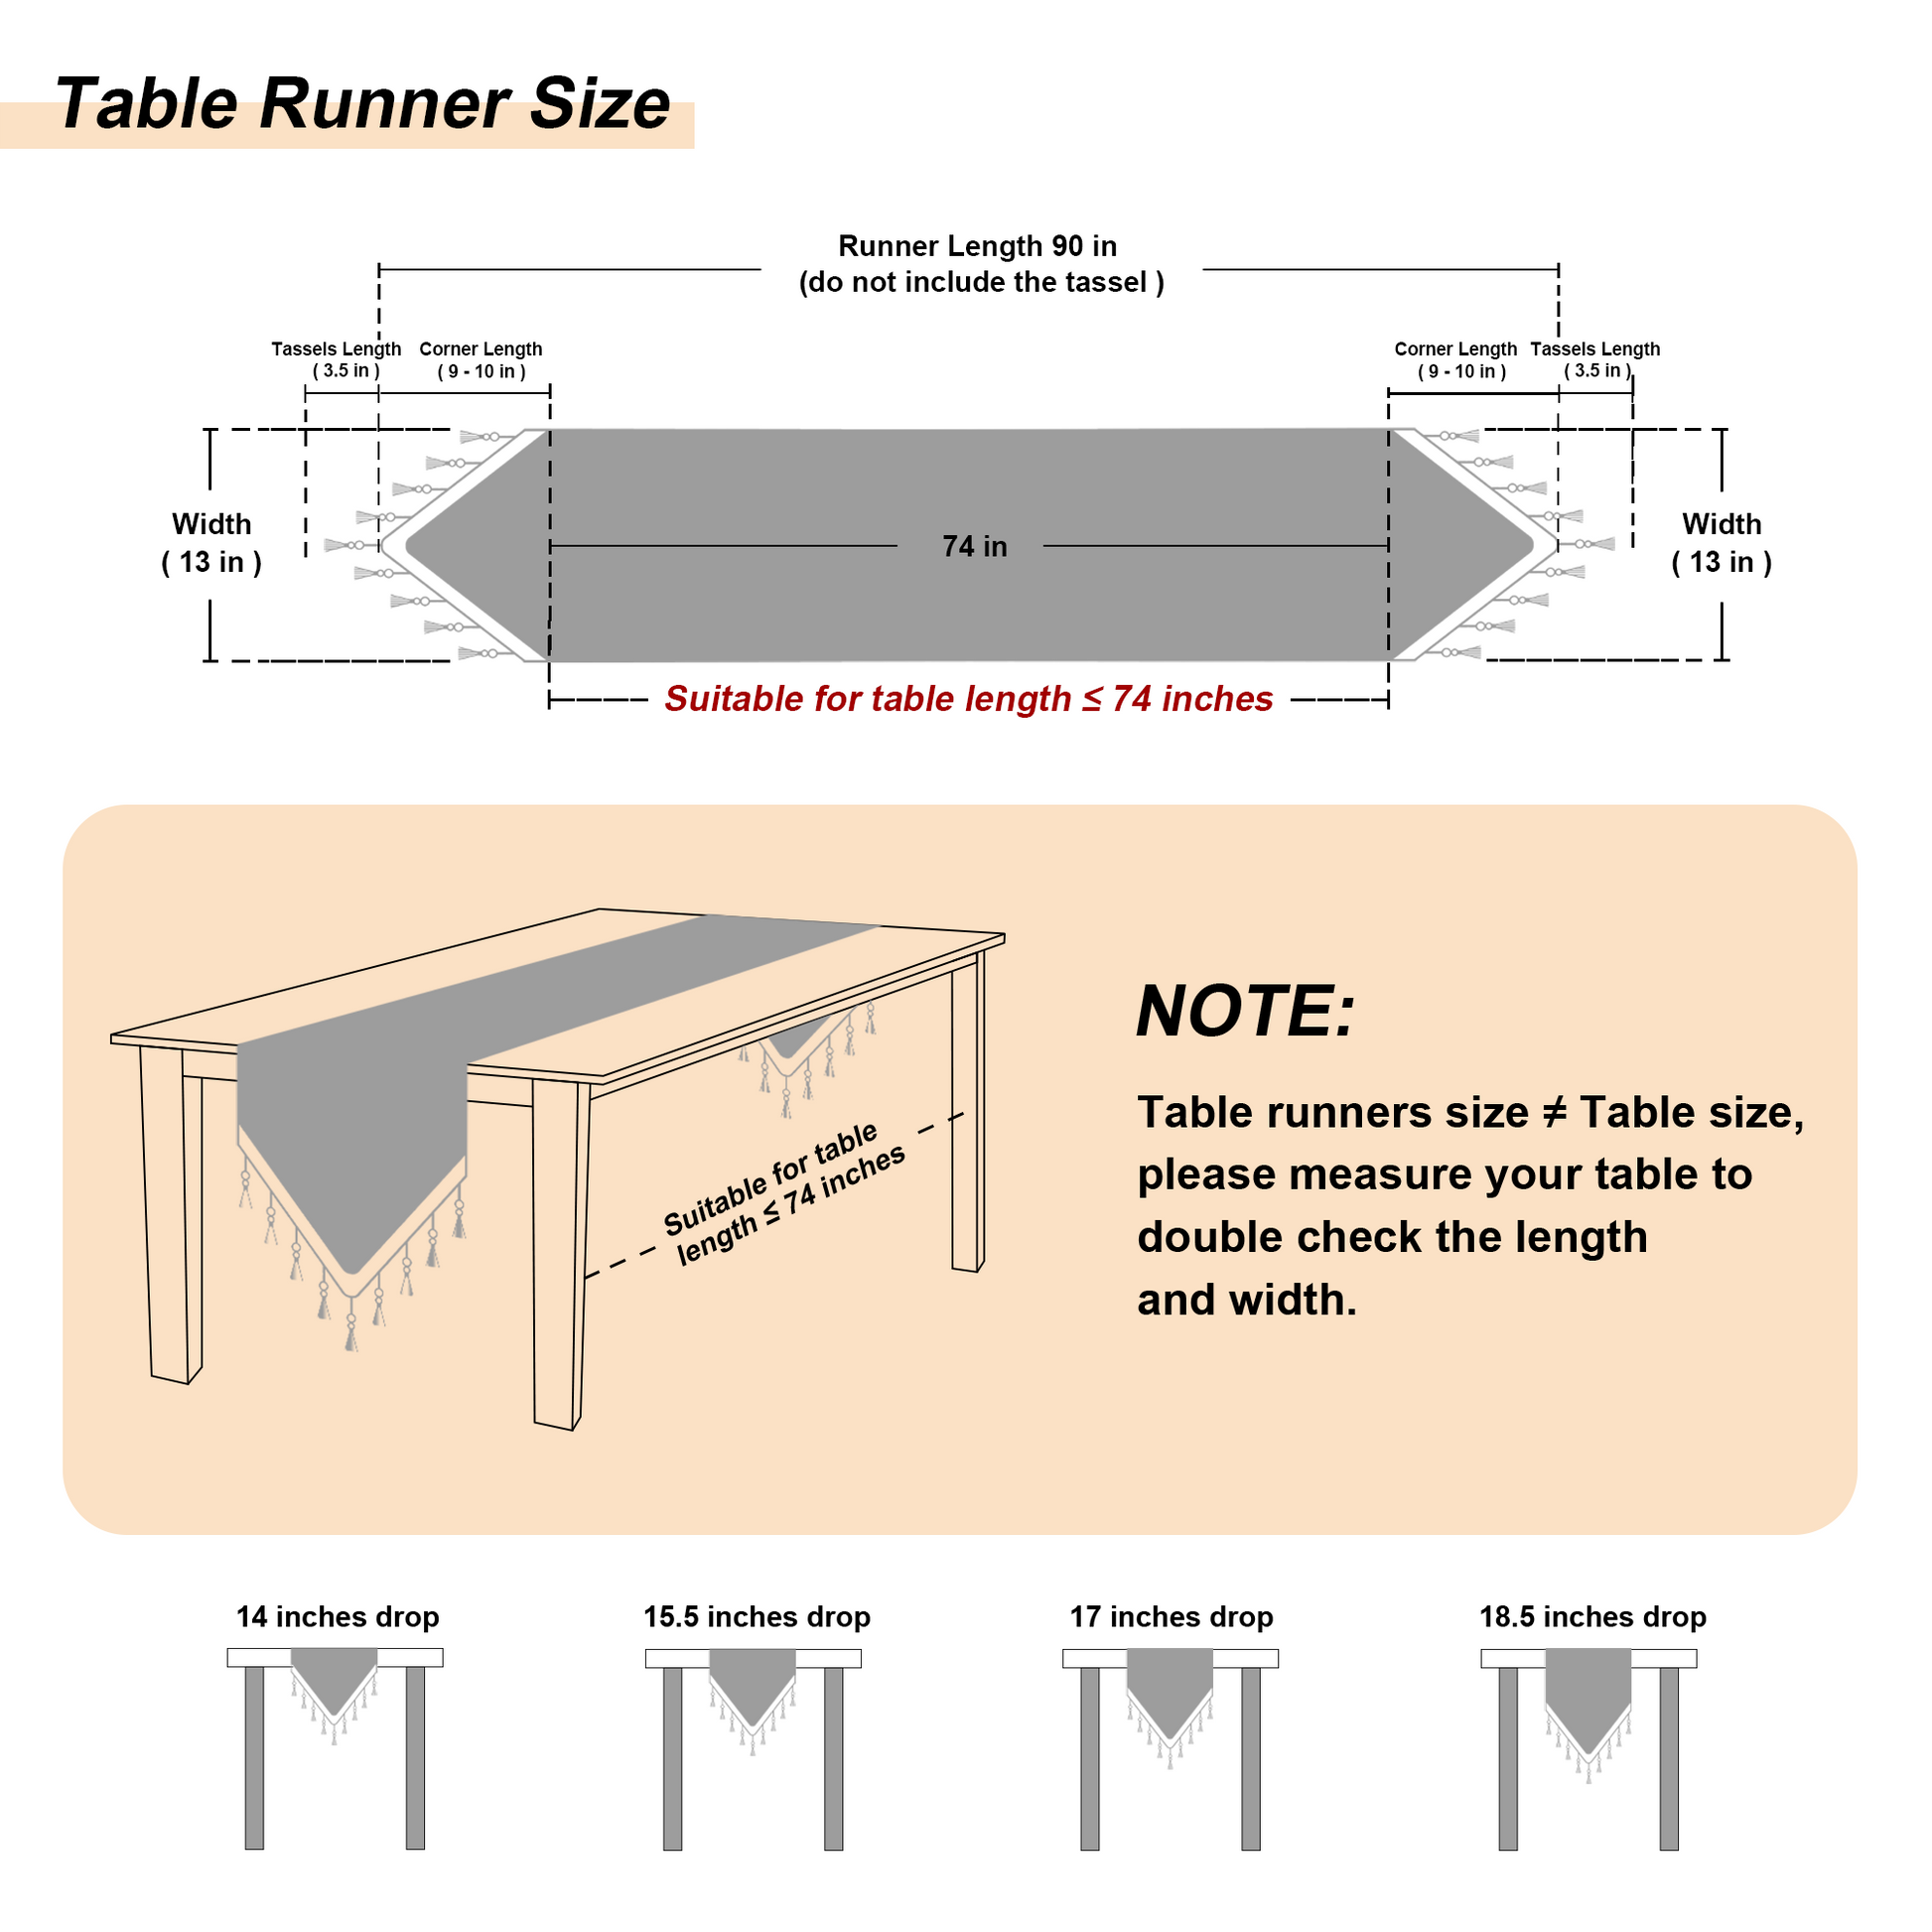    valencia-table-runner